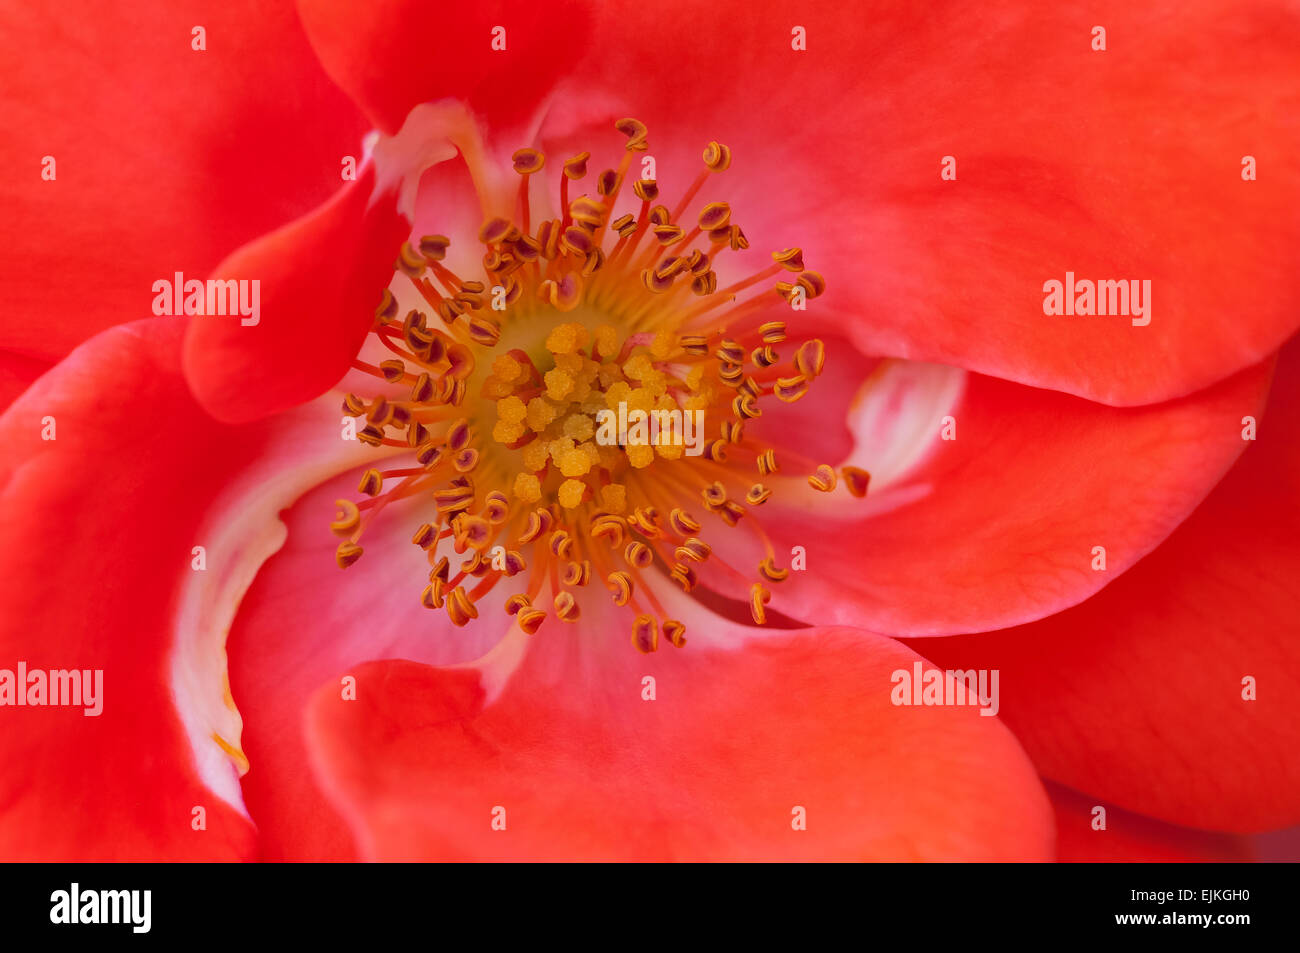 Rose fiore macro close up antera stame rosso di colore arancione Foto Stock